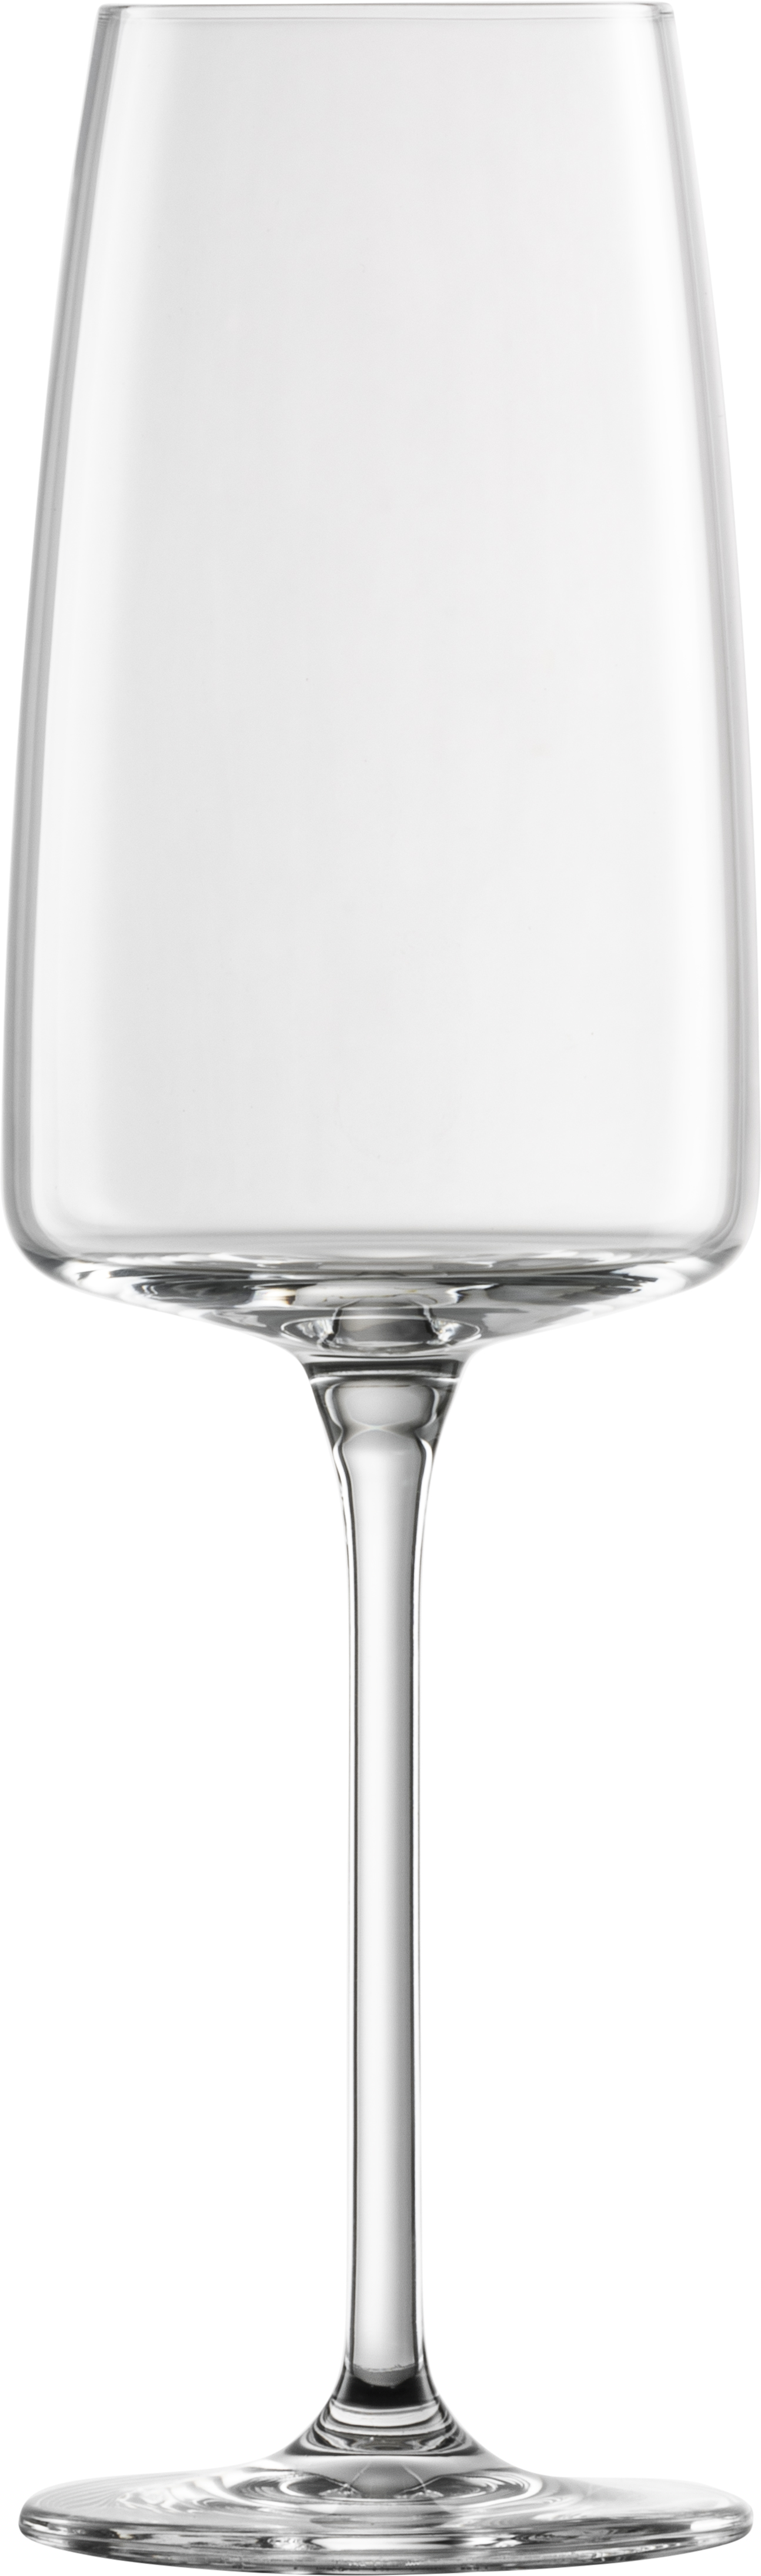 Garn. čaša za vino Sensa 388ml 6/1 Schott Zwiesel